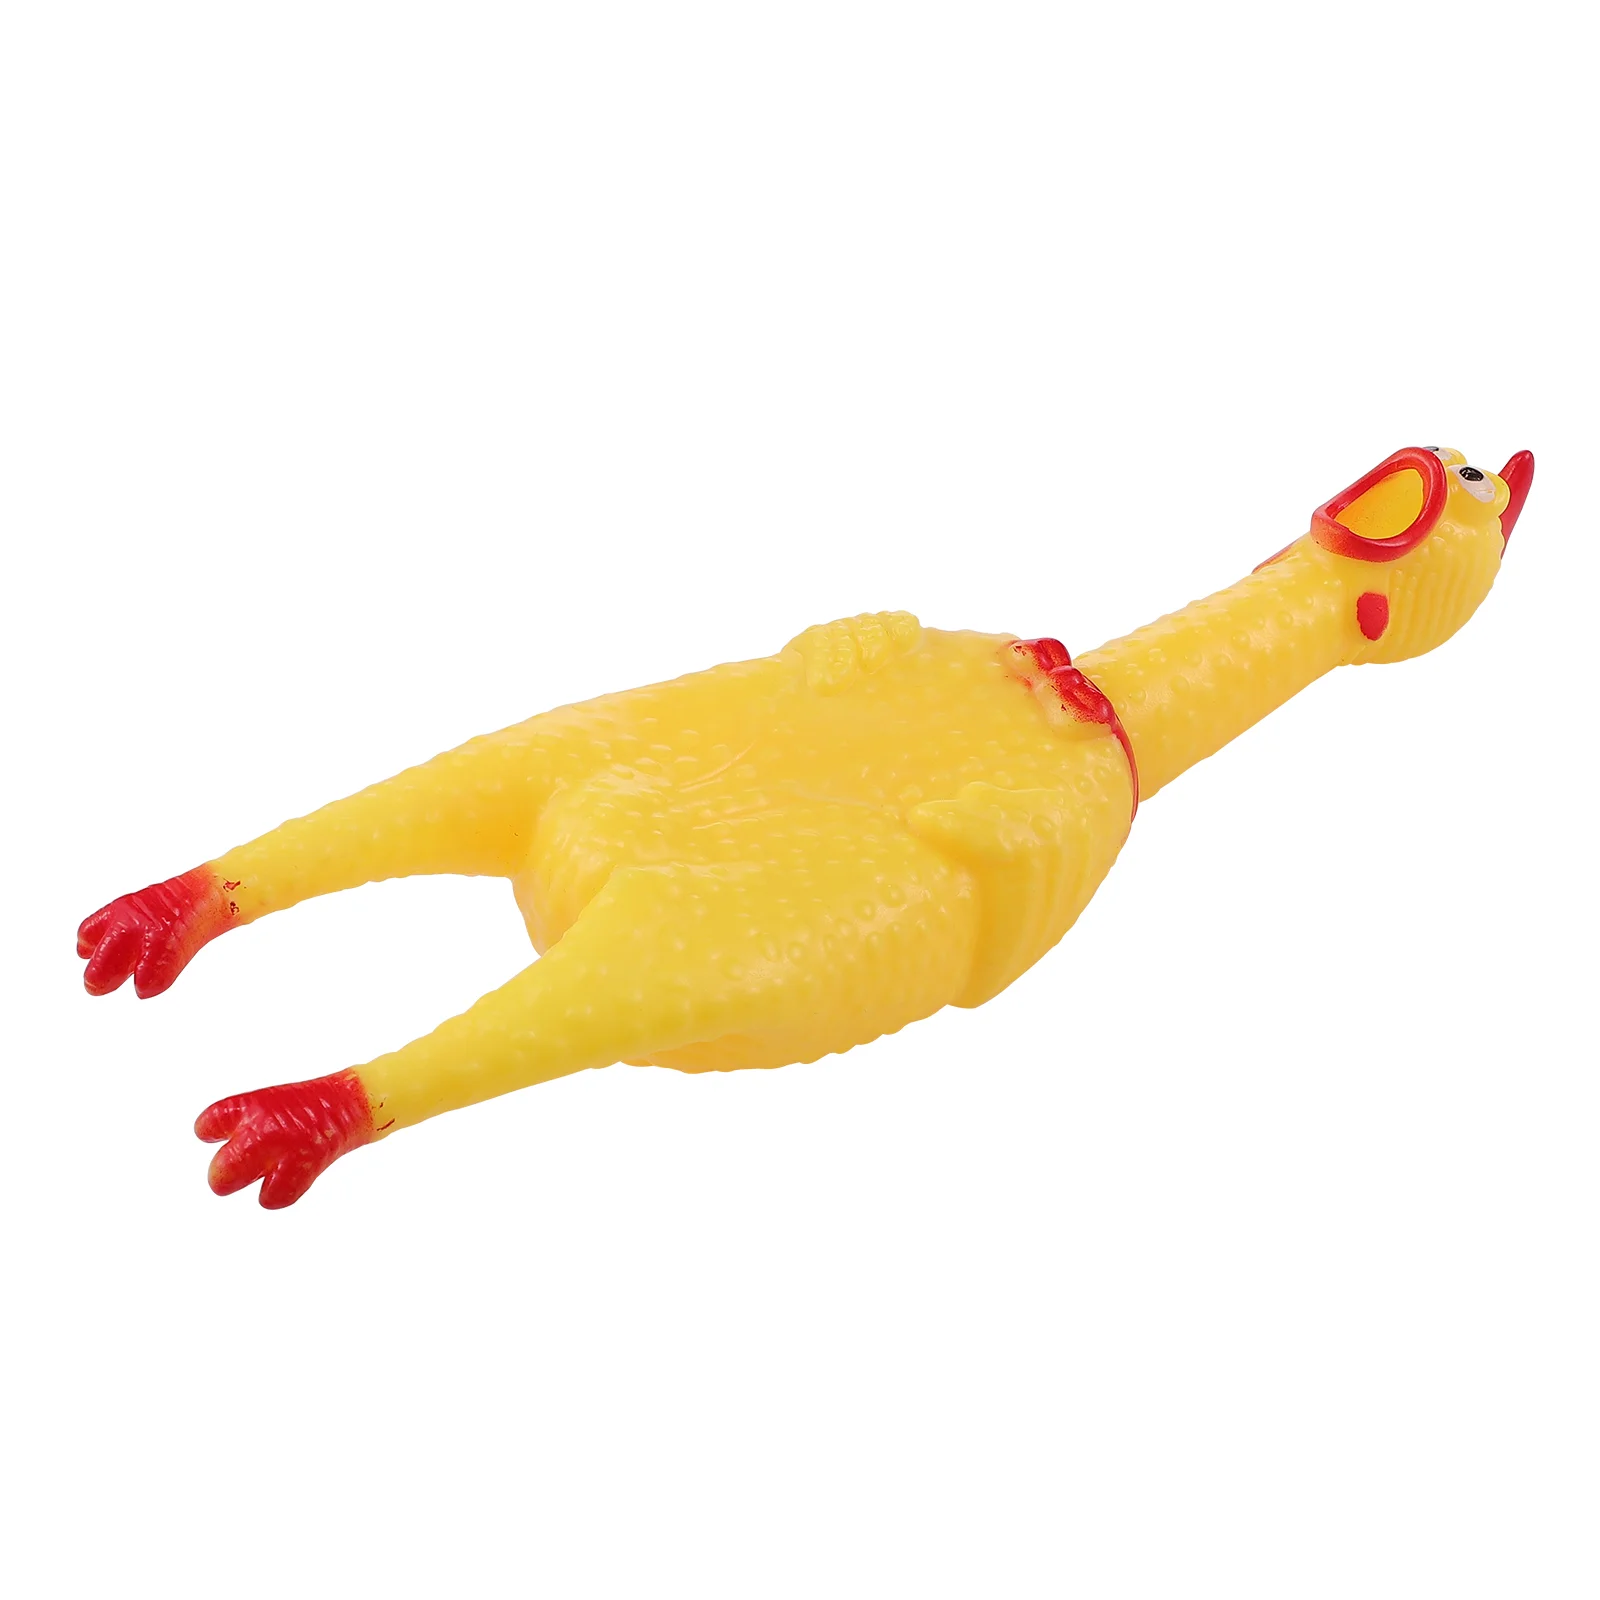 

Kids Girl Toys Squawking Chicken Children Squeeze Strange Squeaky Prank Novelty Man